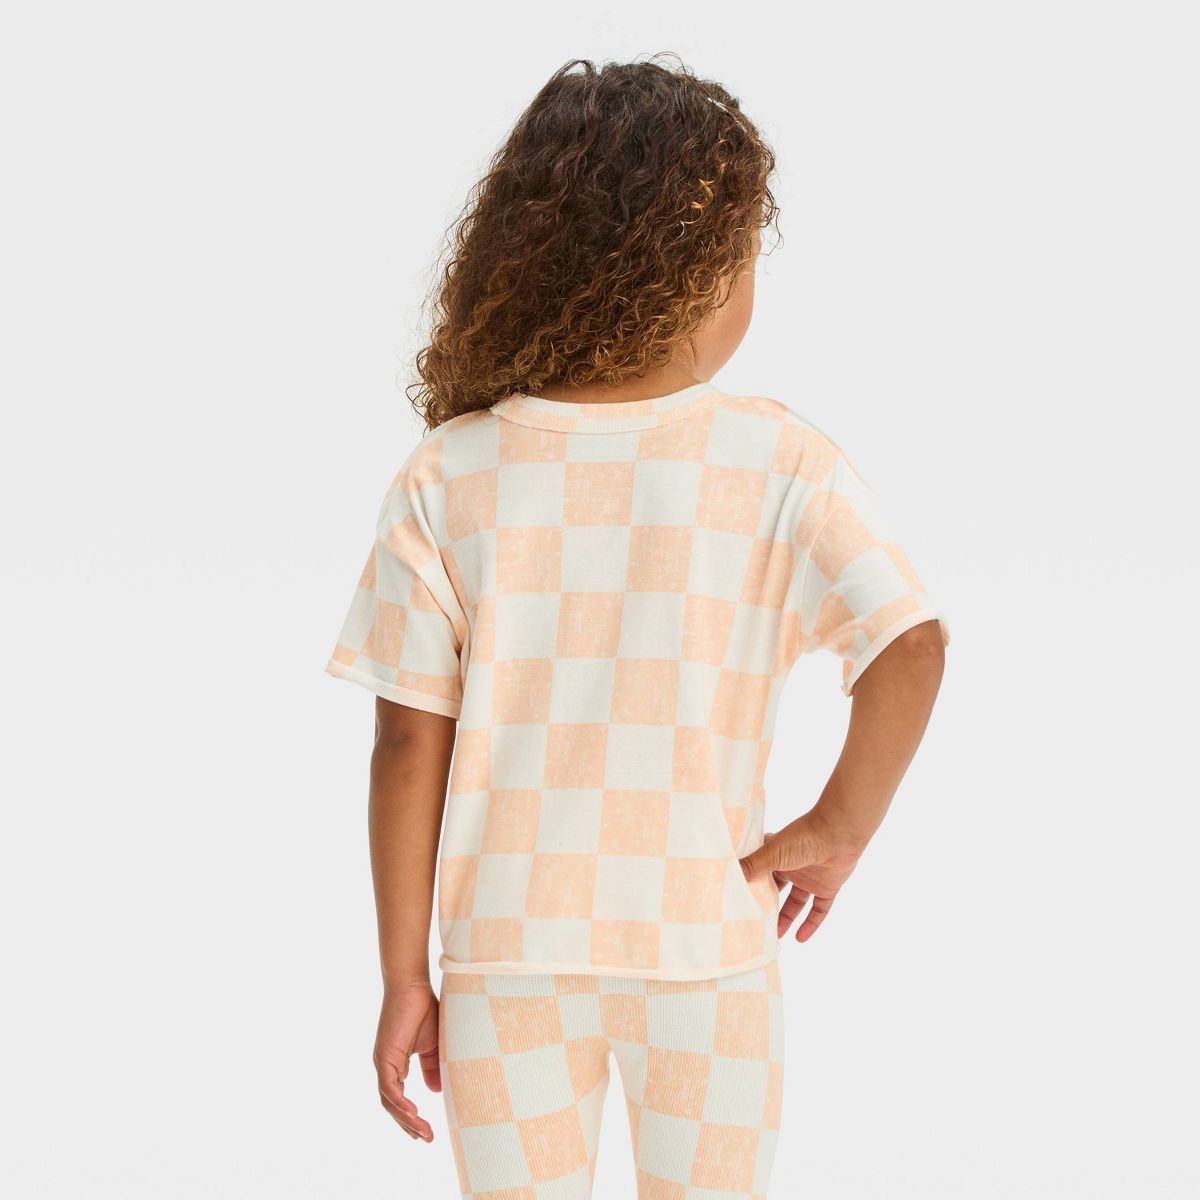 Grayson Mini Toddler Girls' Jersey Knit Checkerboard Printed T-Shirt - Orange | Target